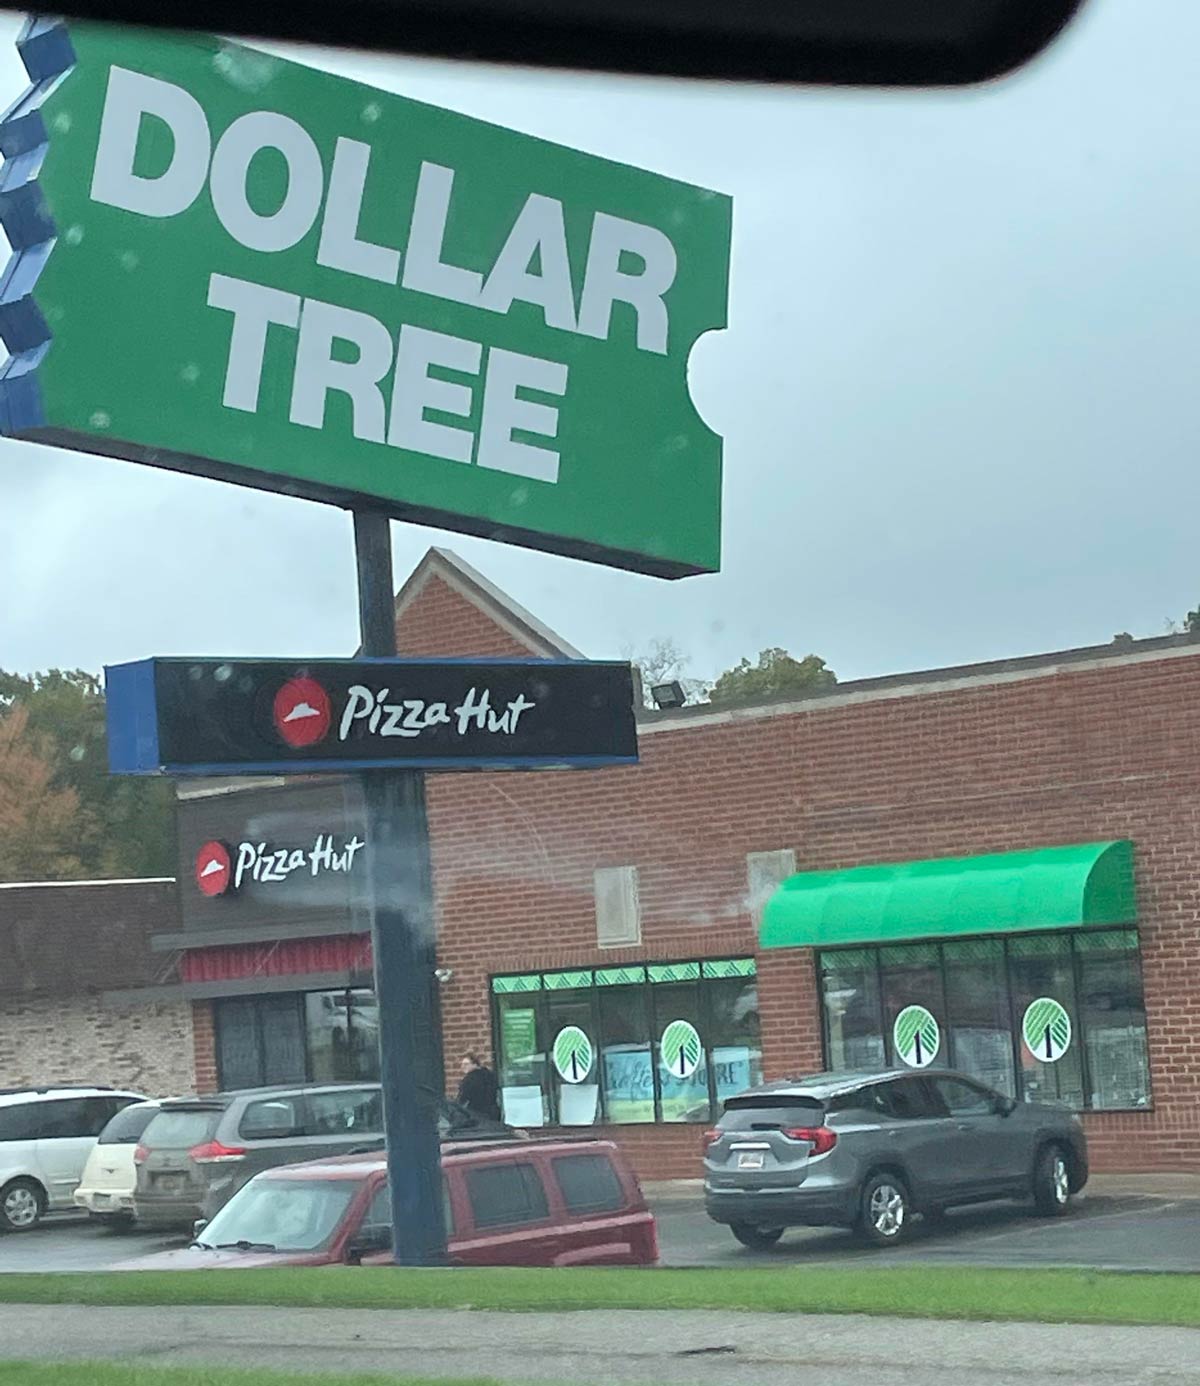 Dollar Tree still uses old Blockbuster sign